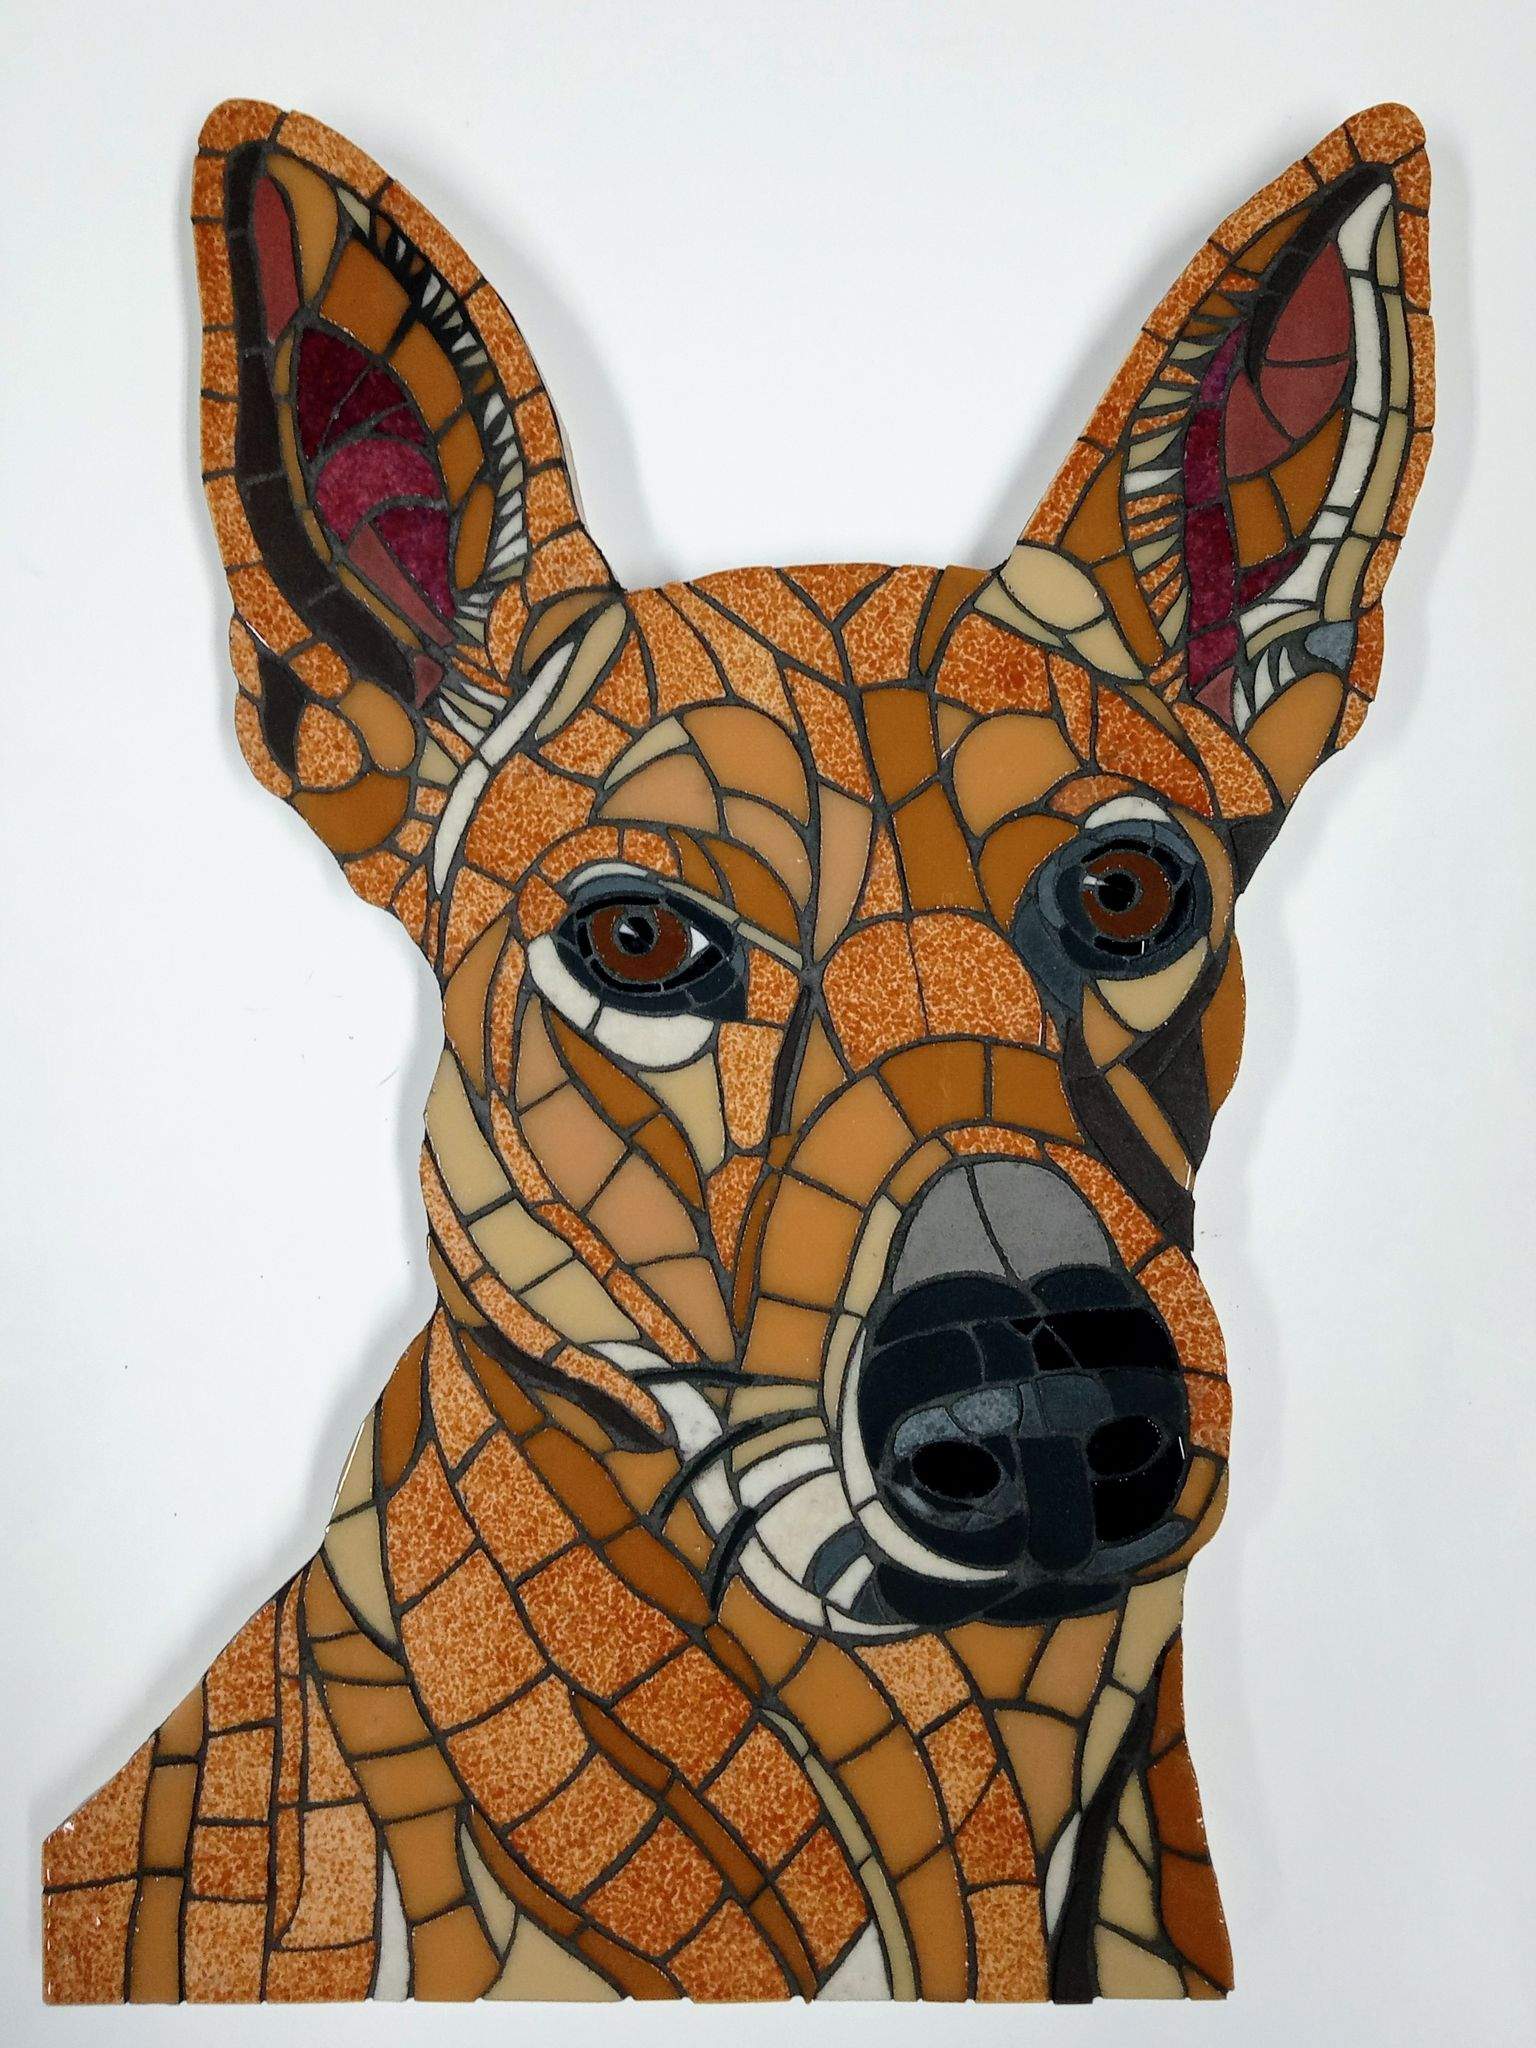 Mozaiekportret van een hond gemaakt met op maat geknipte mozaieksteentjes. De hond heeft bruin-oranje kleuren, de ogen zijn bruin.